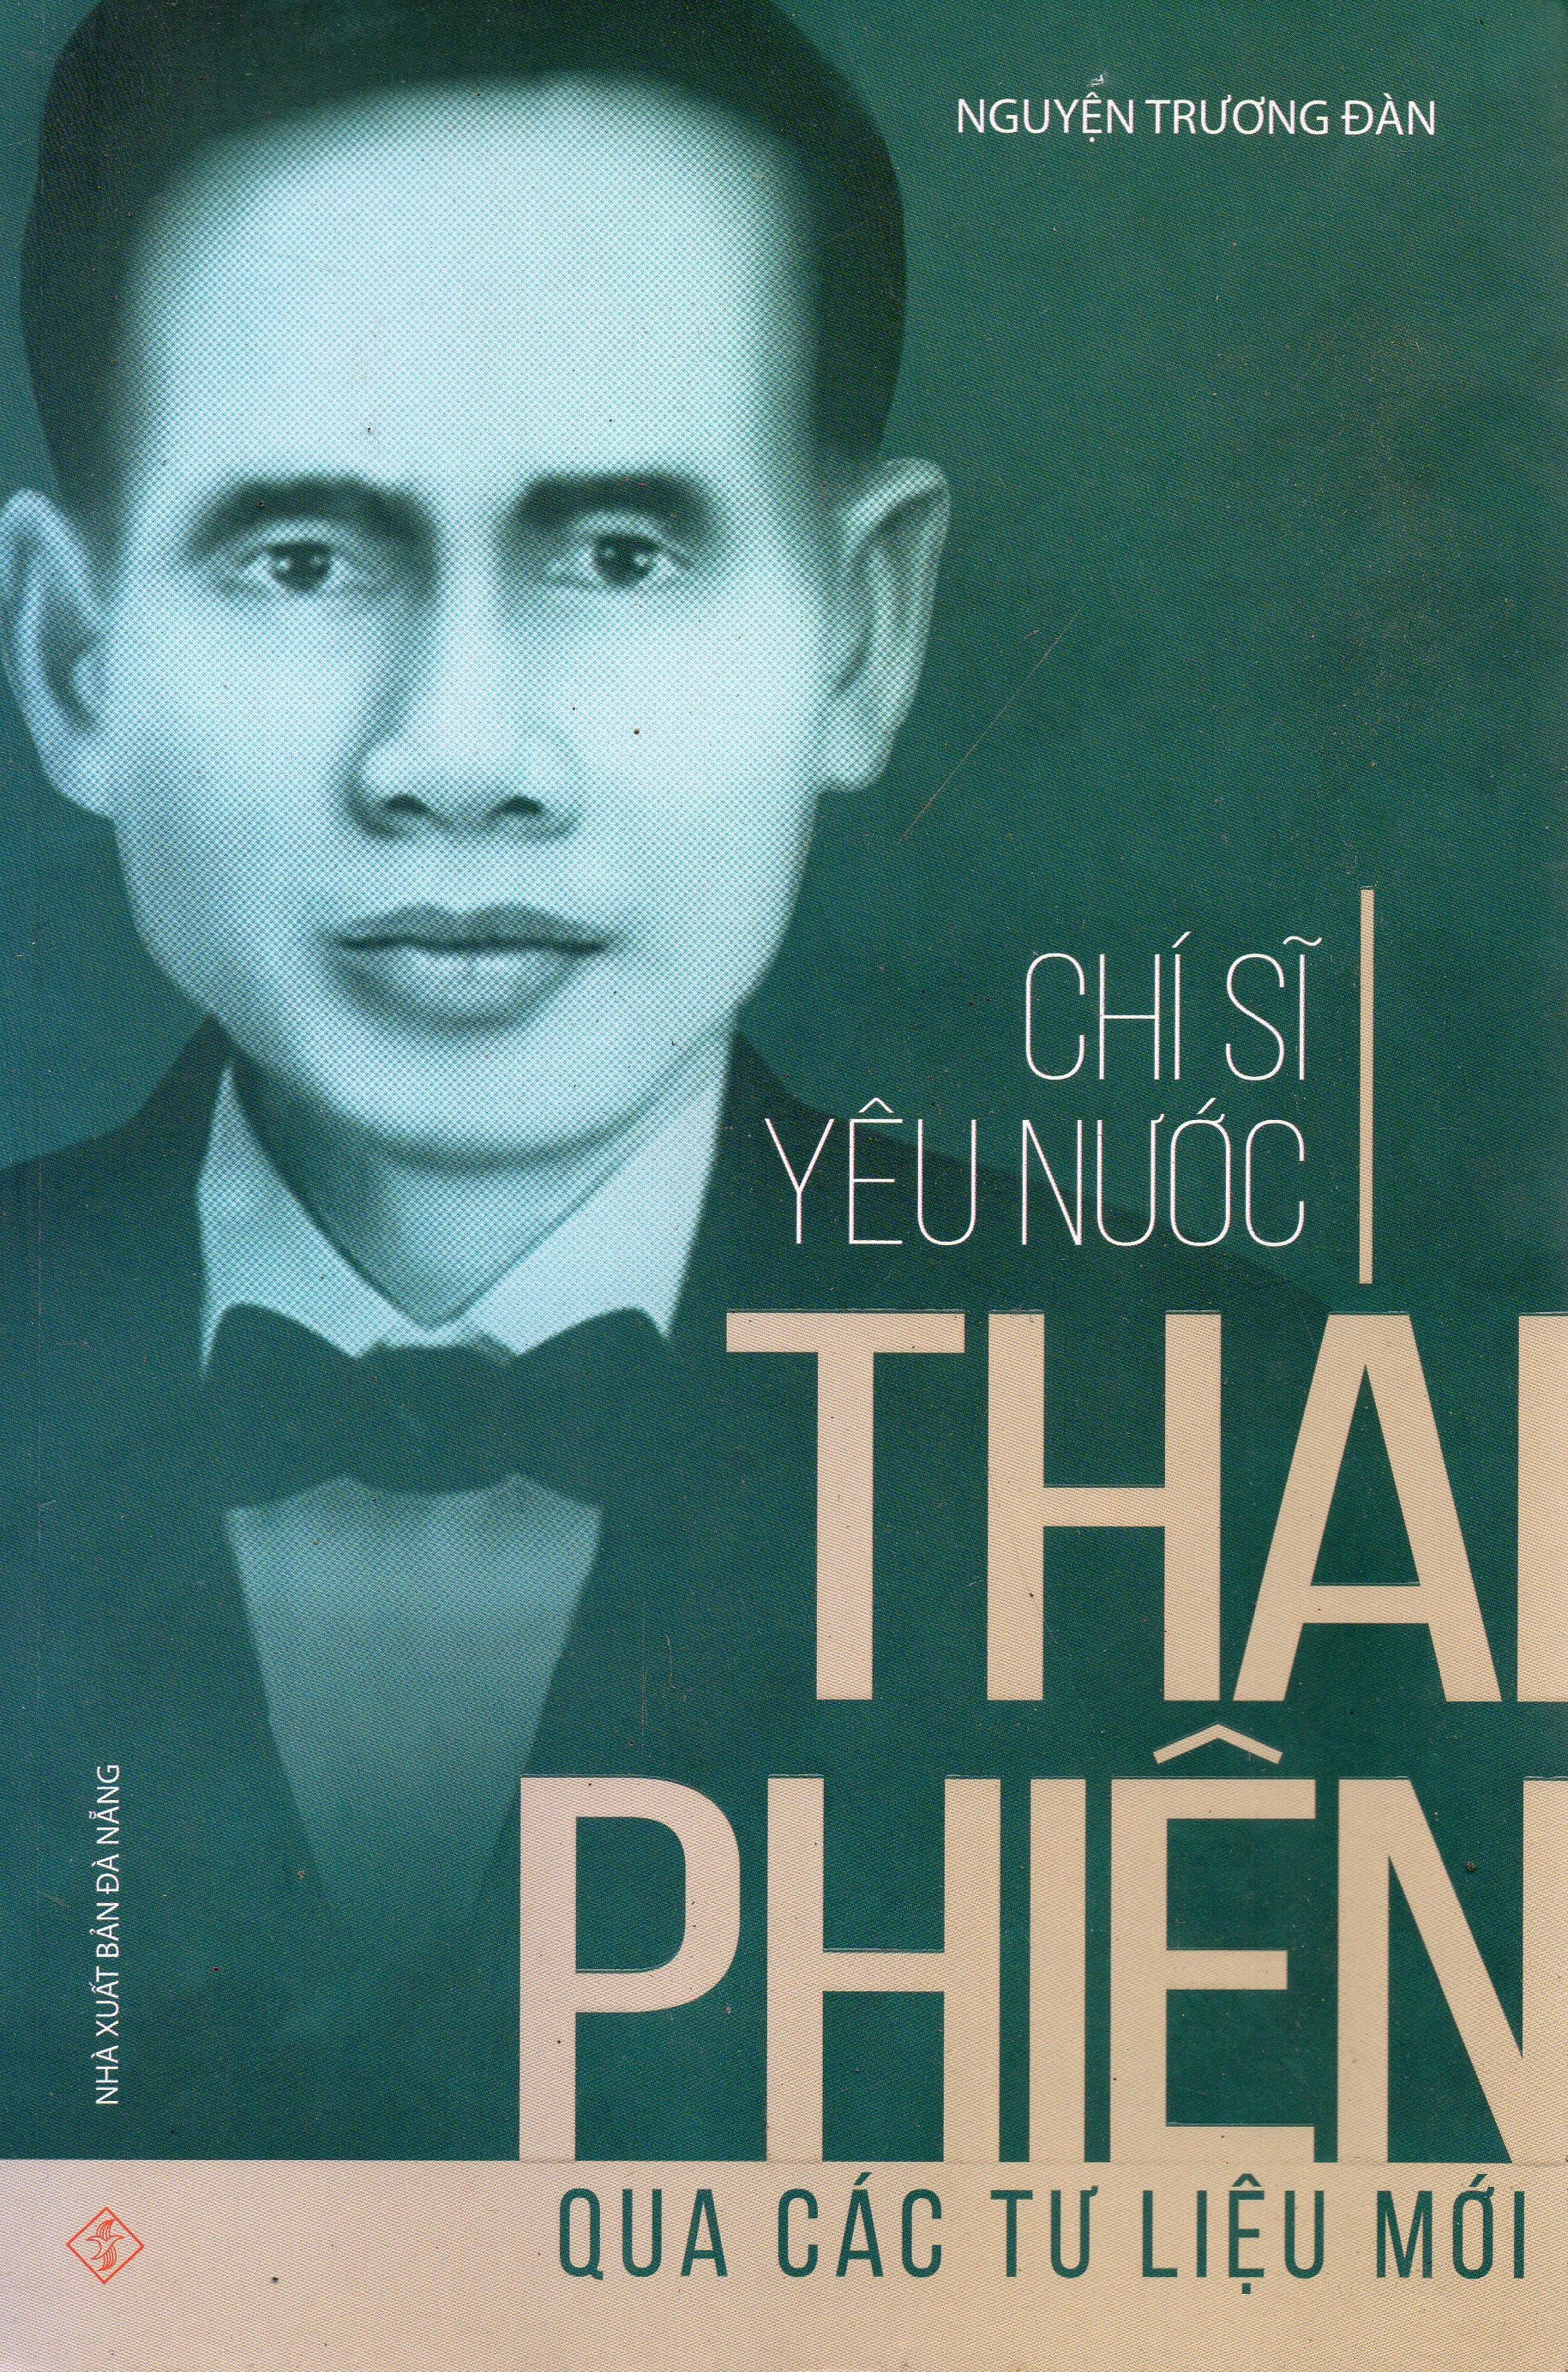 Chí sĩ yêu nước Thái Phiên qua các tư liệu mới